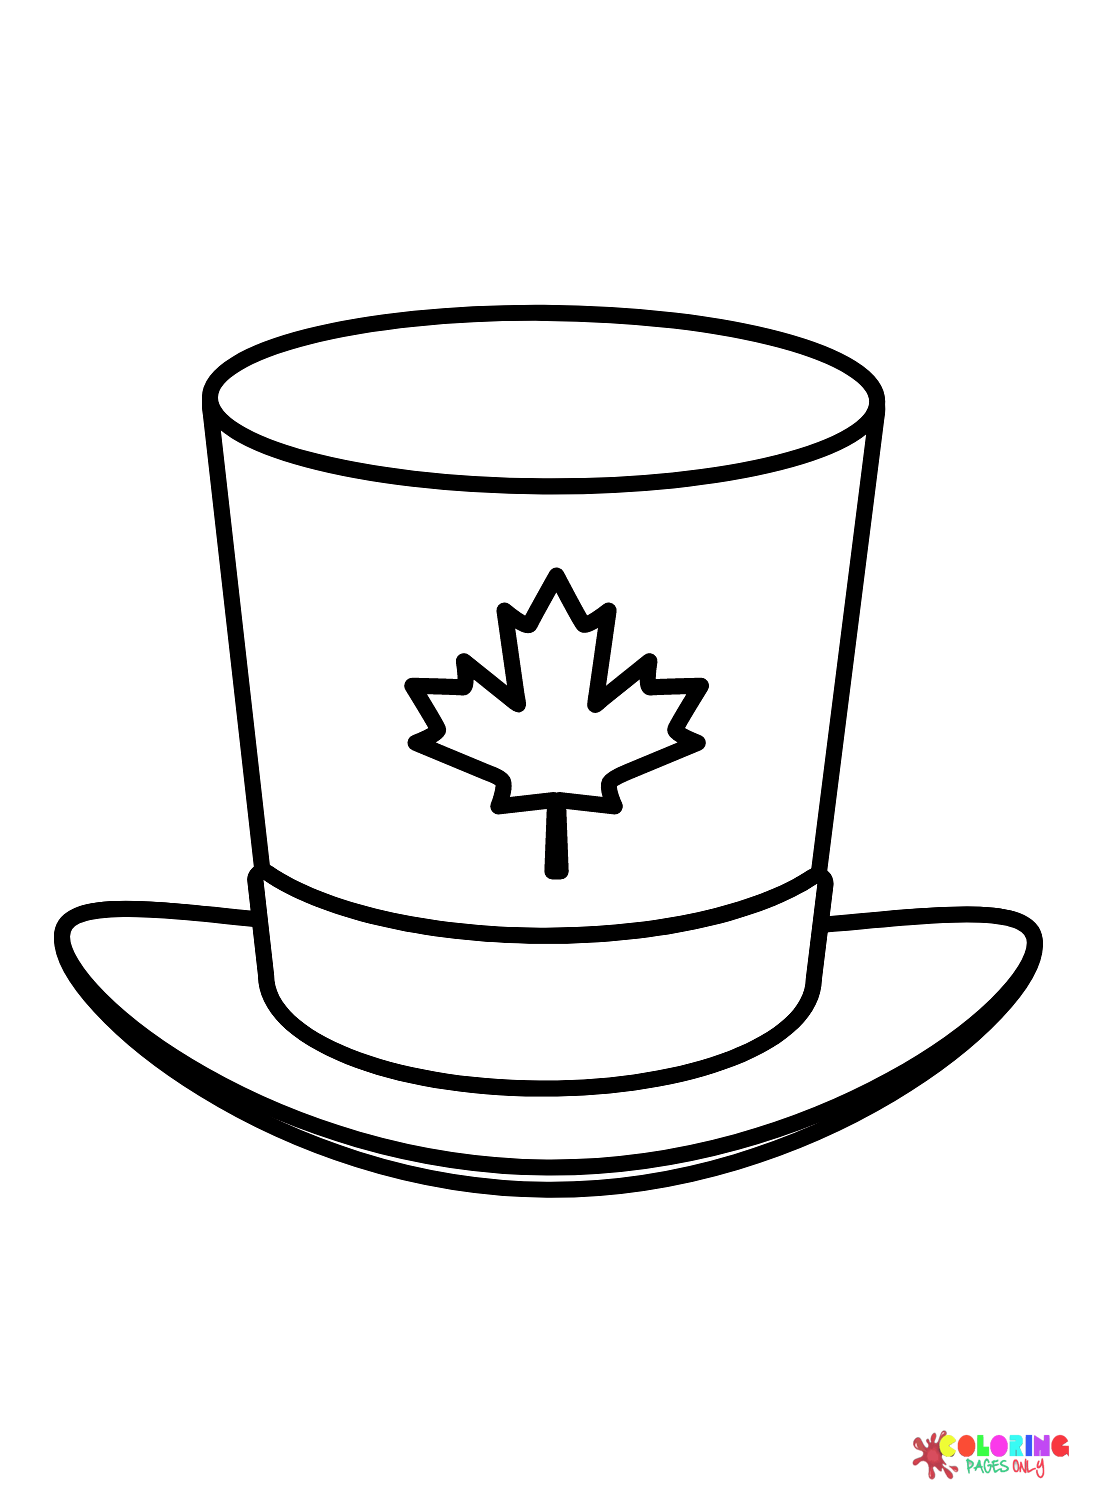 القبعة العلوية في يوم كندا من يوم كندا